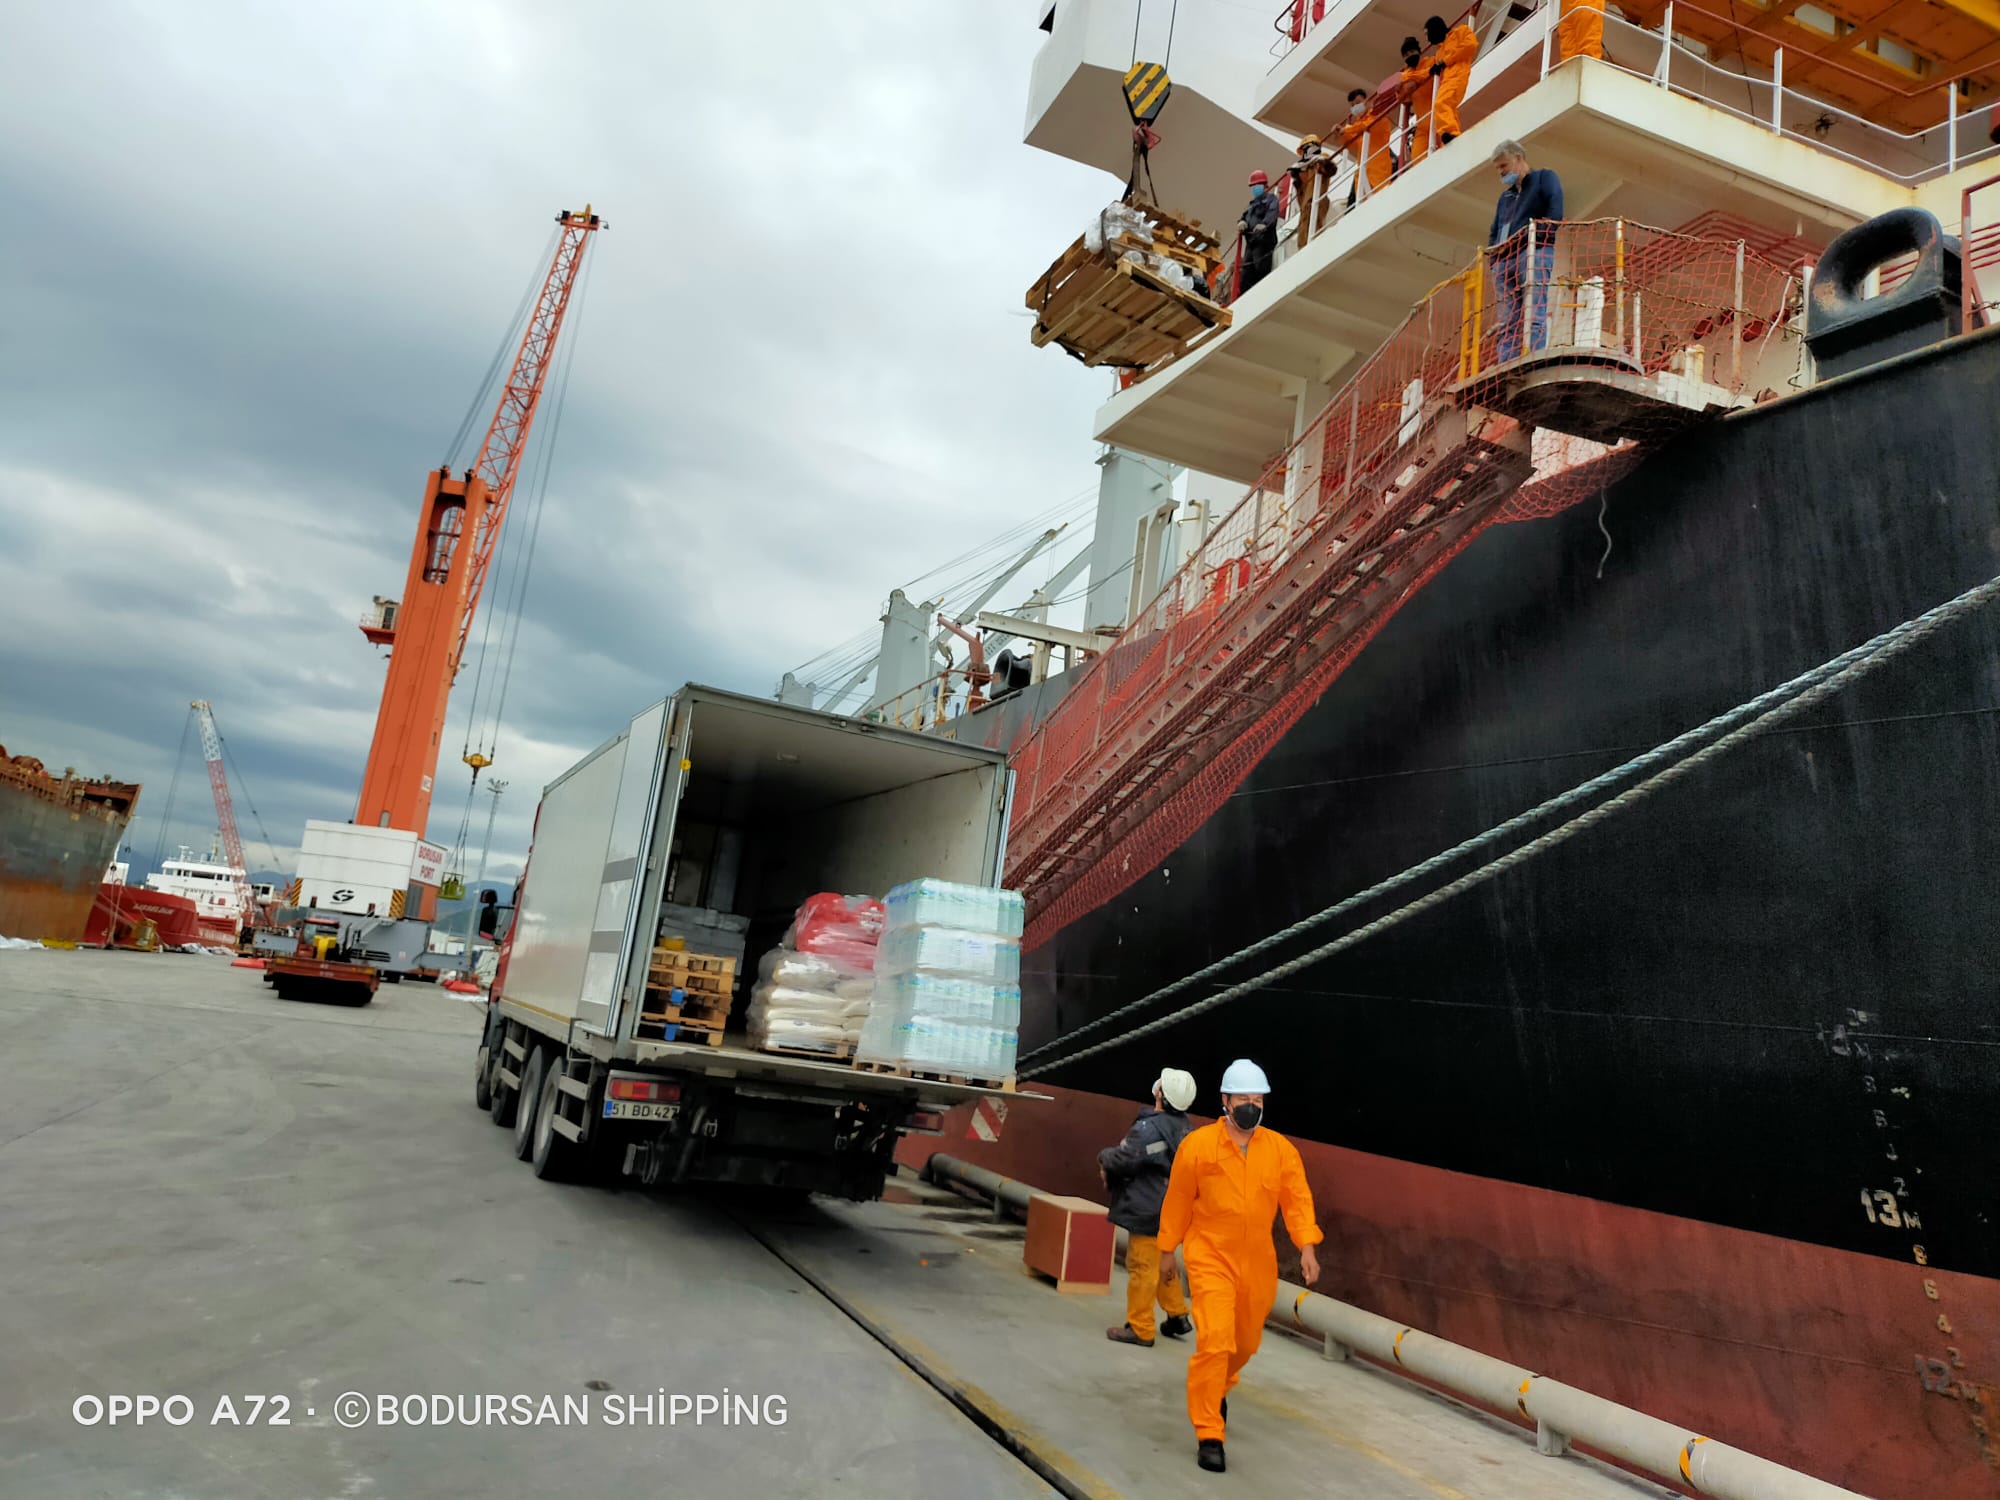 Bodursan Ship Supply